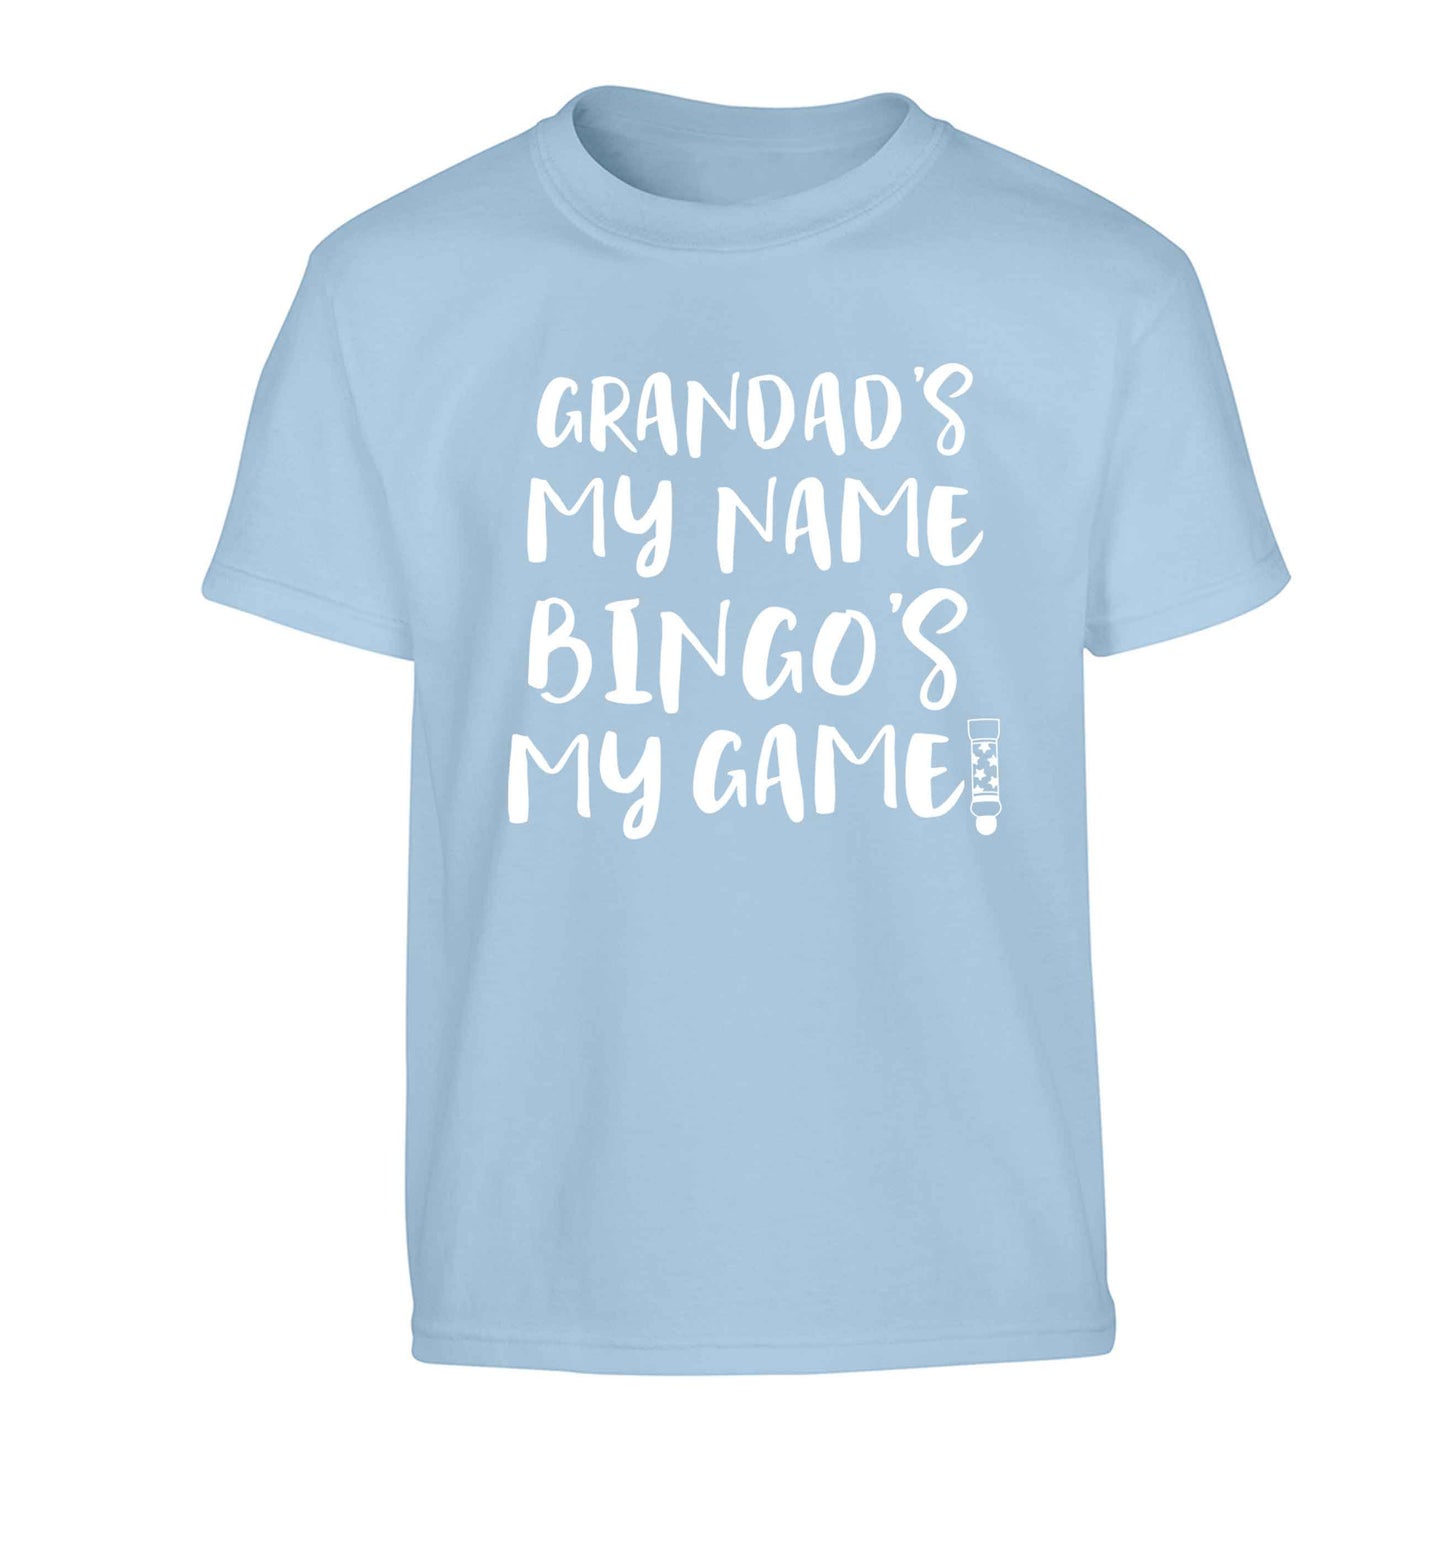 Grandad's my name bingo's my game! Children's light blue Tshirt 12-13 Years